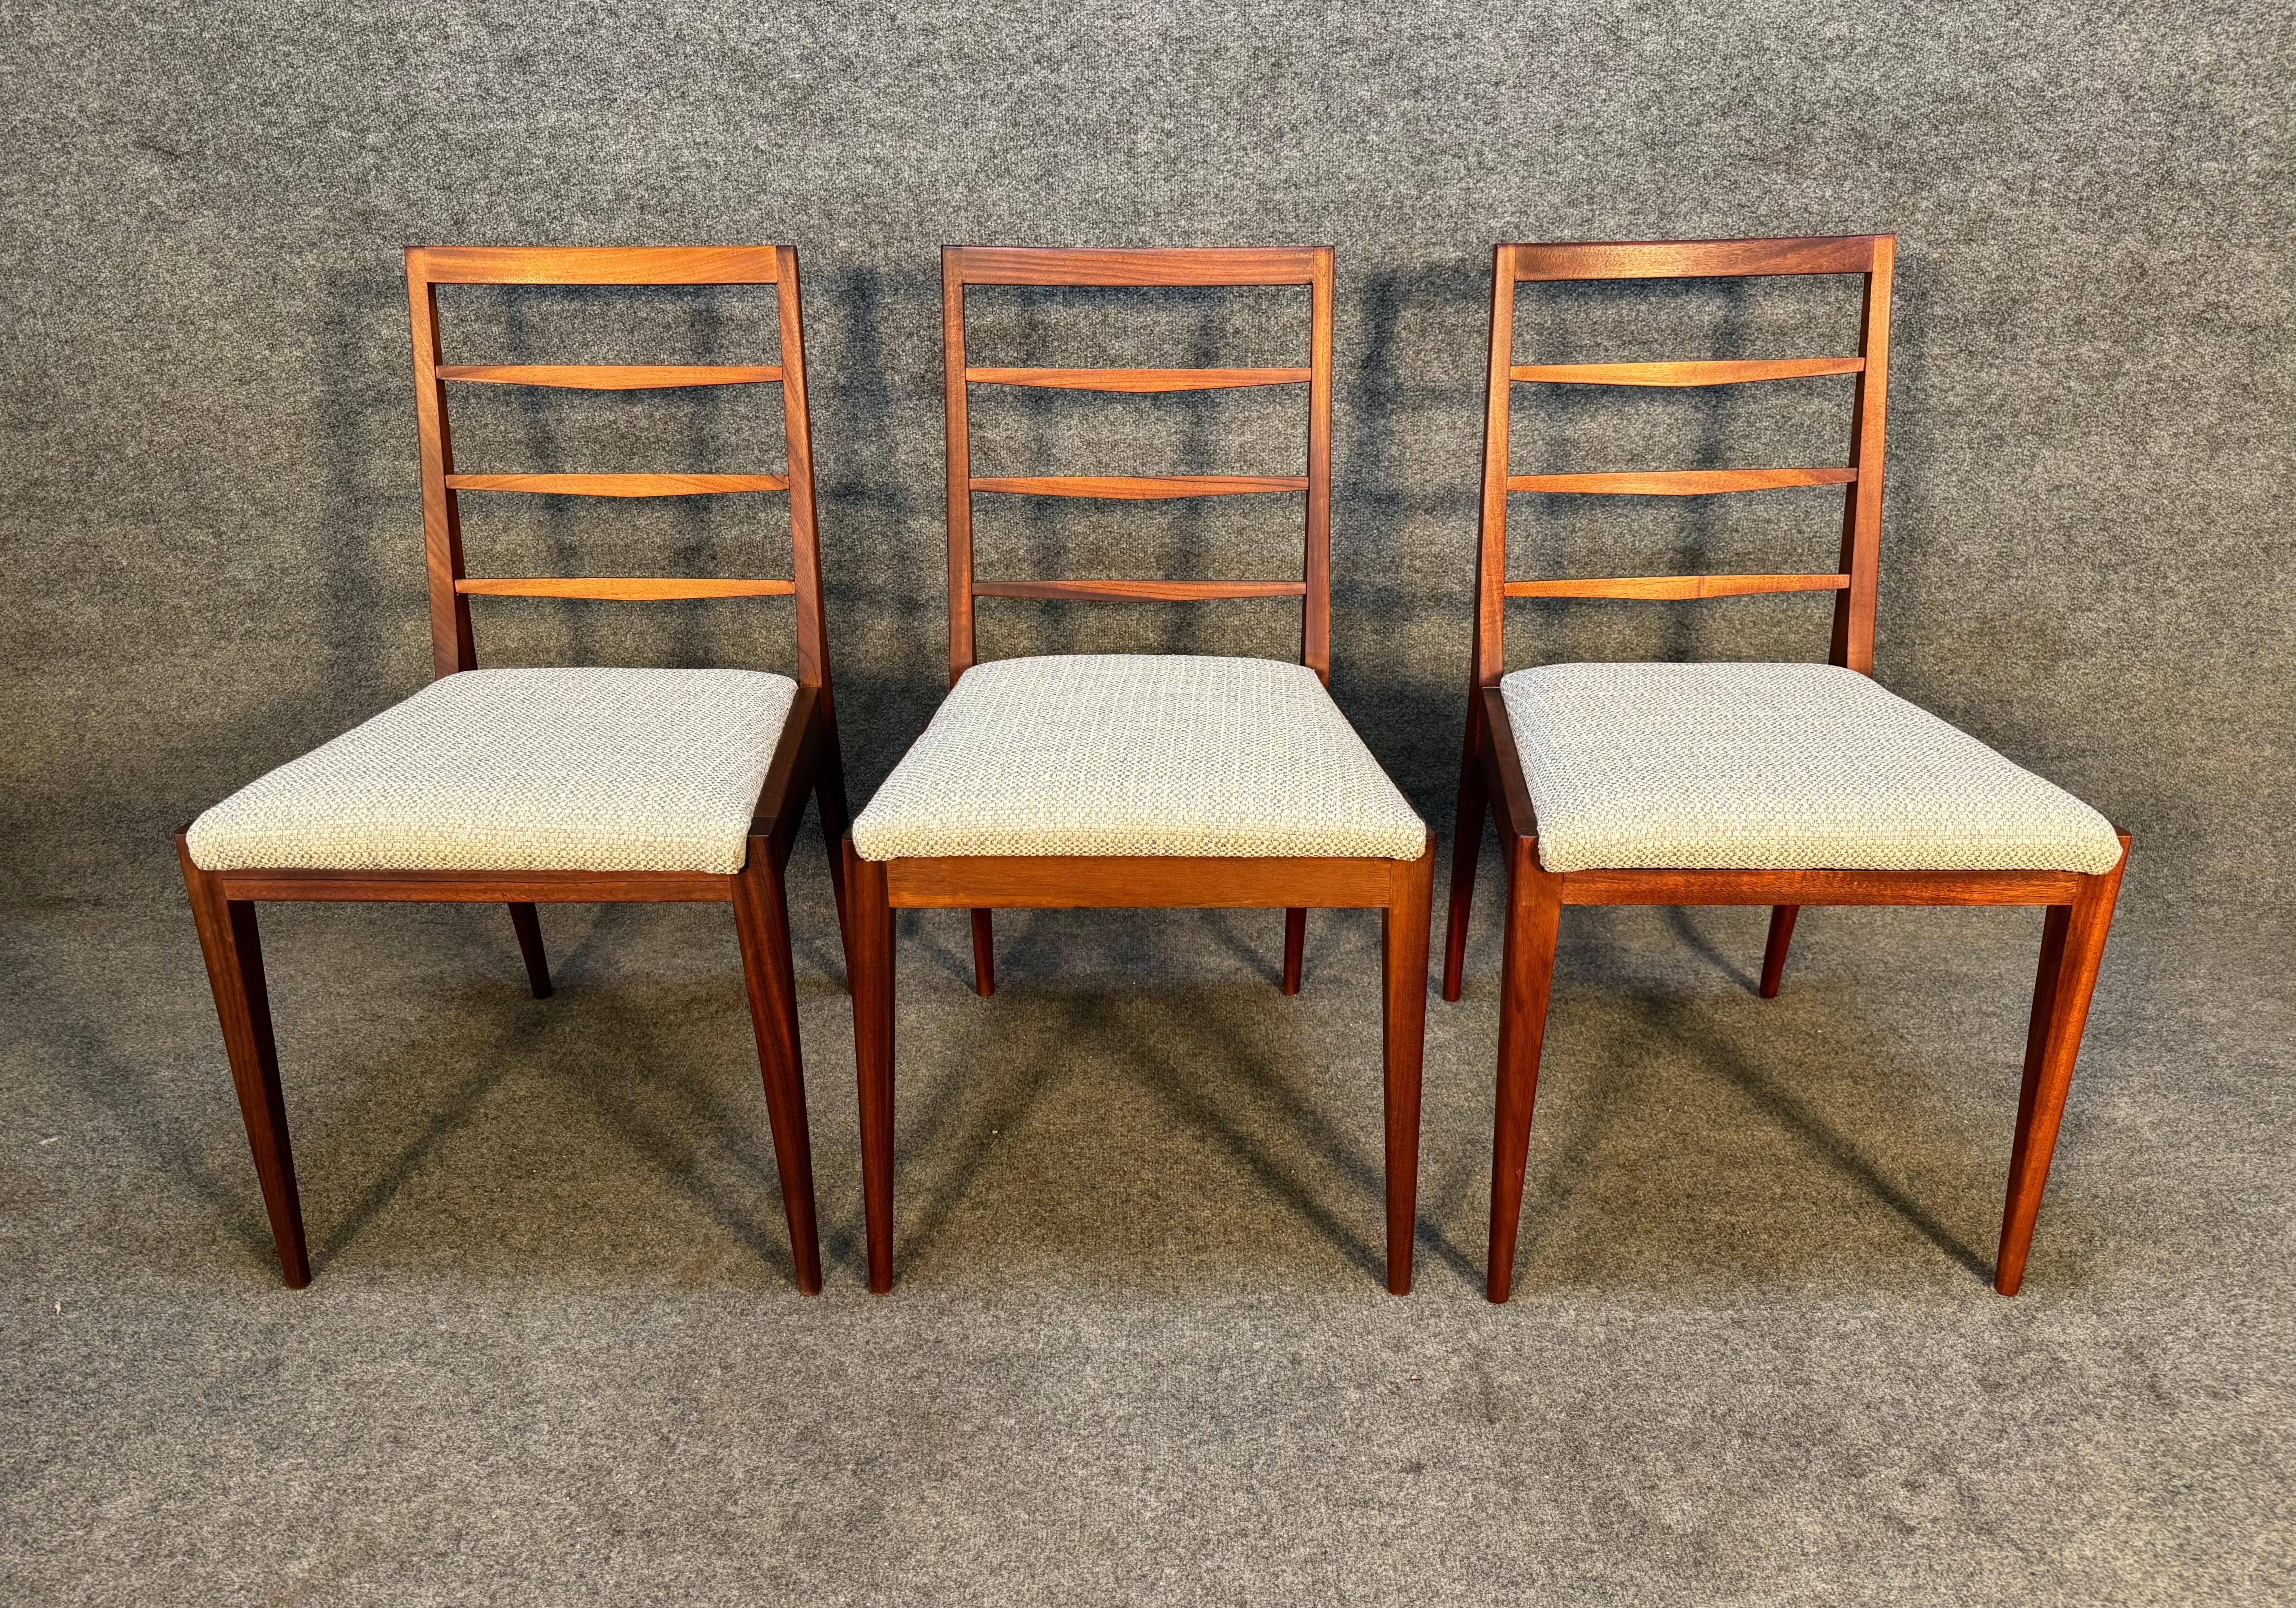 Voici un magnifique ensemble de six chaises de salle à manger en acajou massif fabriquées par McIntosh en Ecosse dans les années 1960.
Cet ensemble confortable, récemment importé d'Europe en Californie avant d'être remis à neuf, présente un cadre